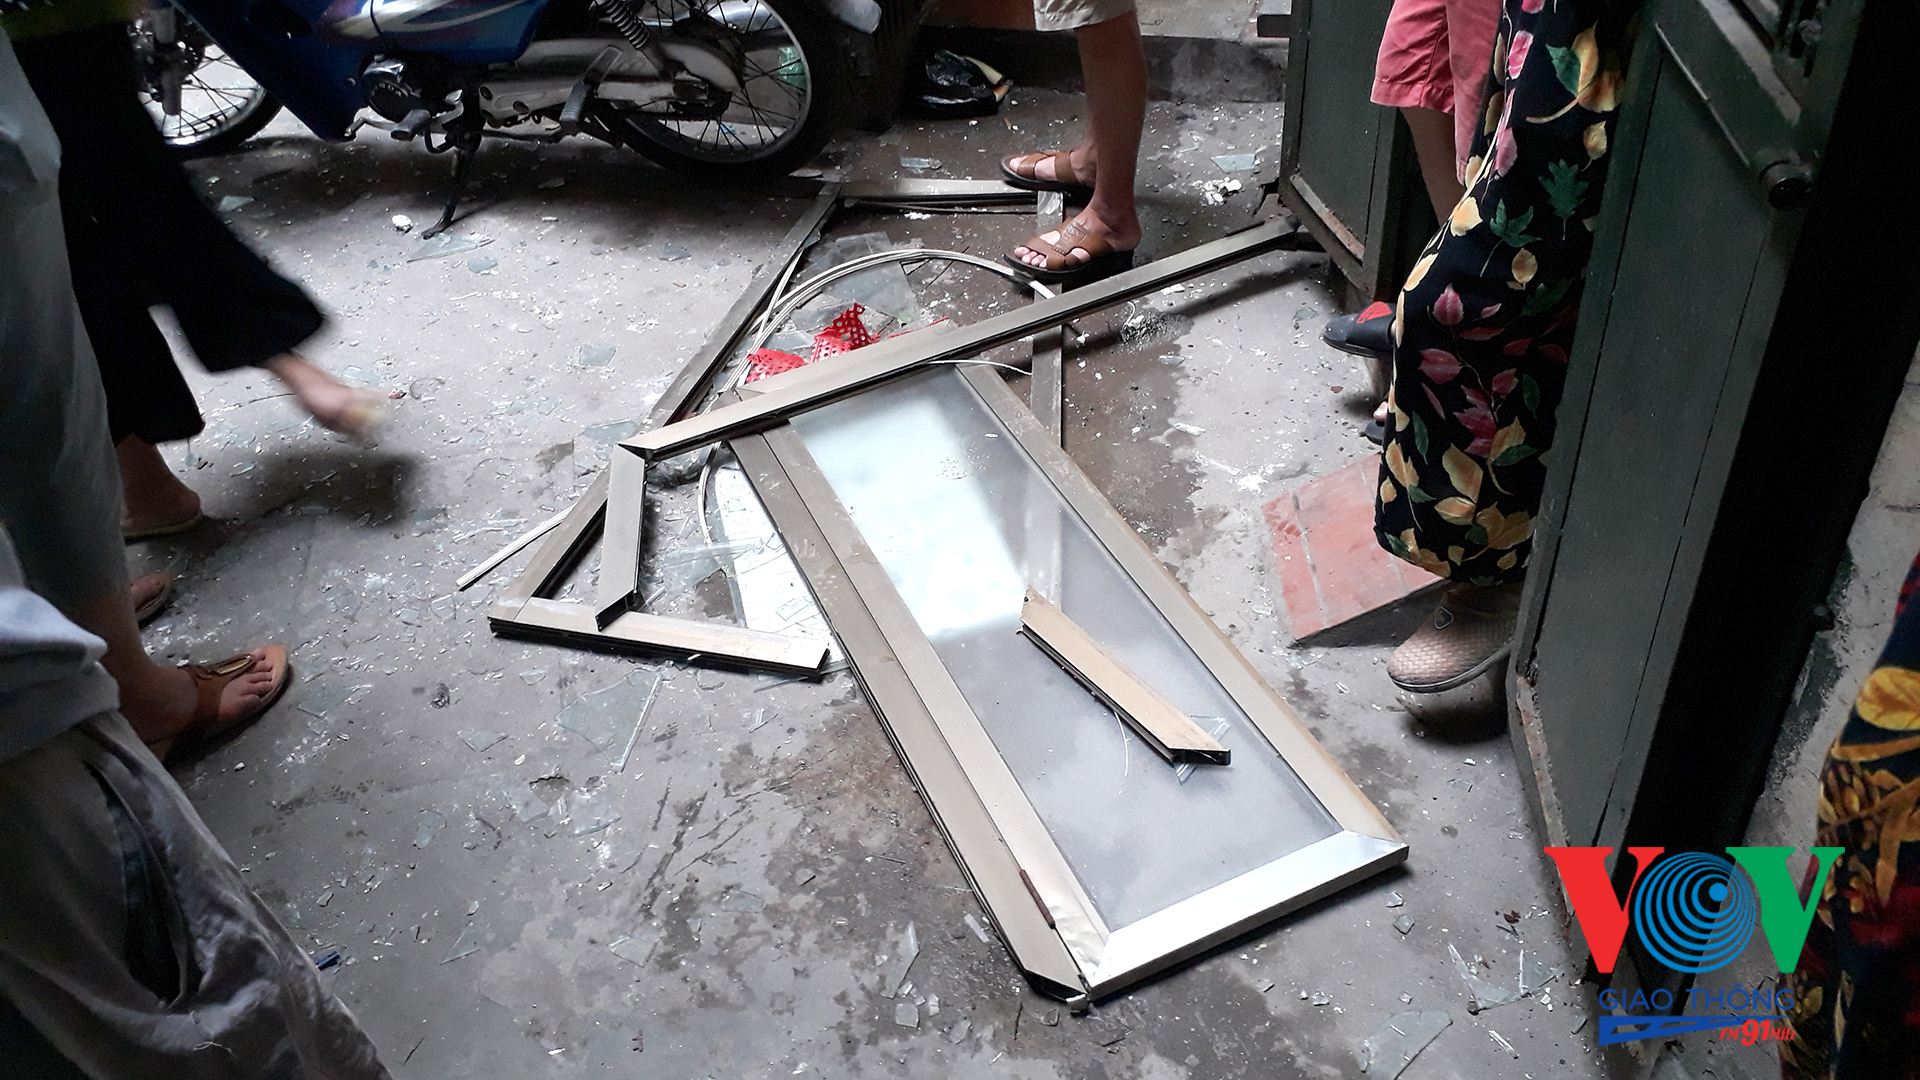 Ảnh hưởng từ vụ nổ bình ga, 2 nhà tại số 22 ngõ 29 Nguyễn Thái Học bị hư hại nặng (Ảnh: Chấn Hải)